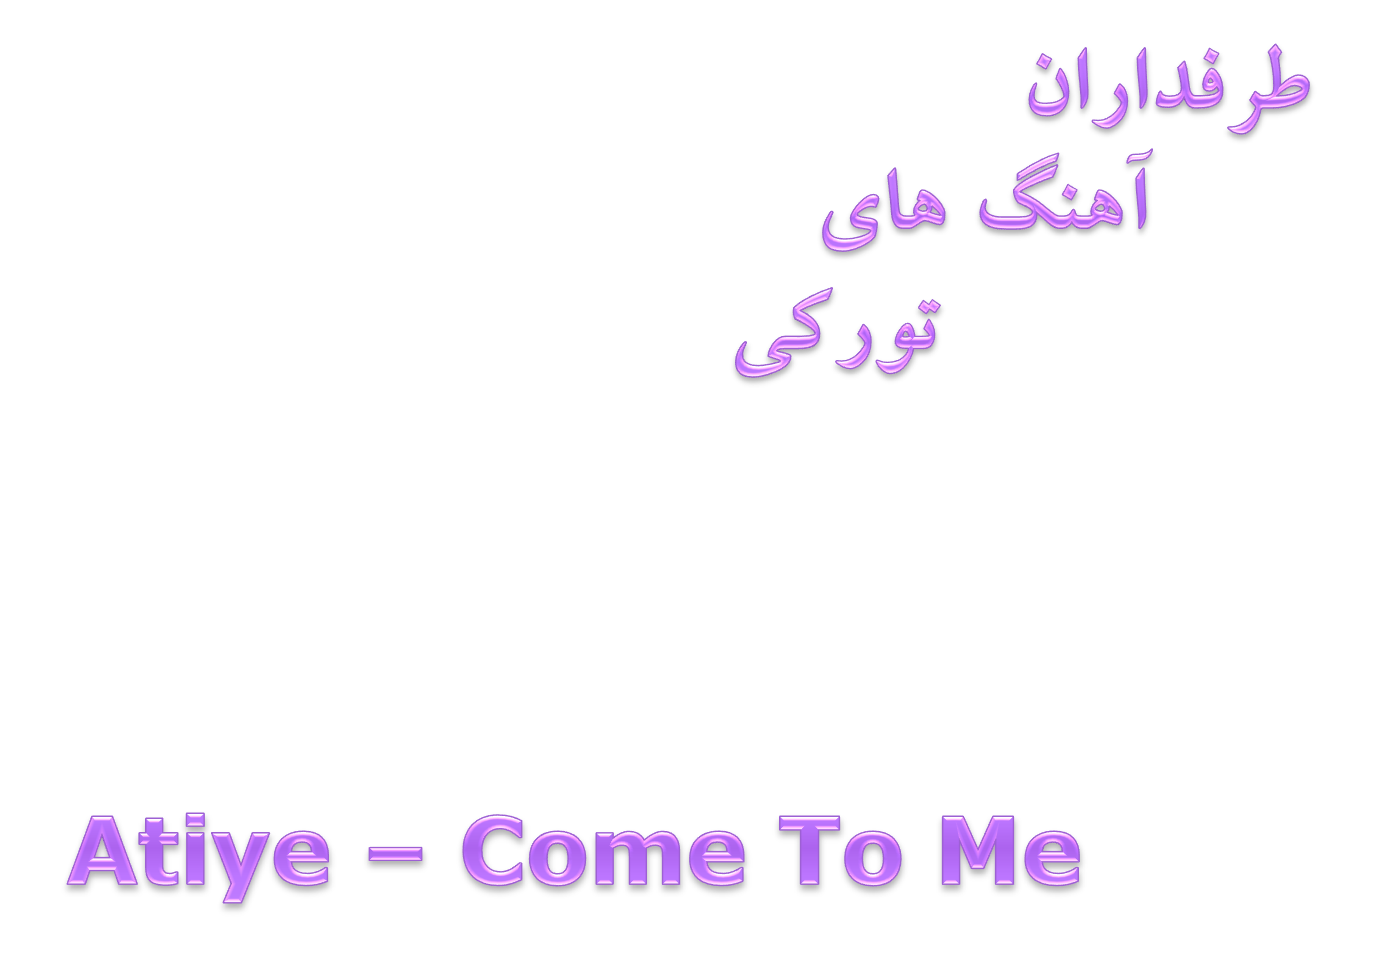 دانلود آهنگ جدید و فوق العاده زیبای Atiye بنام Come To Me